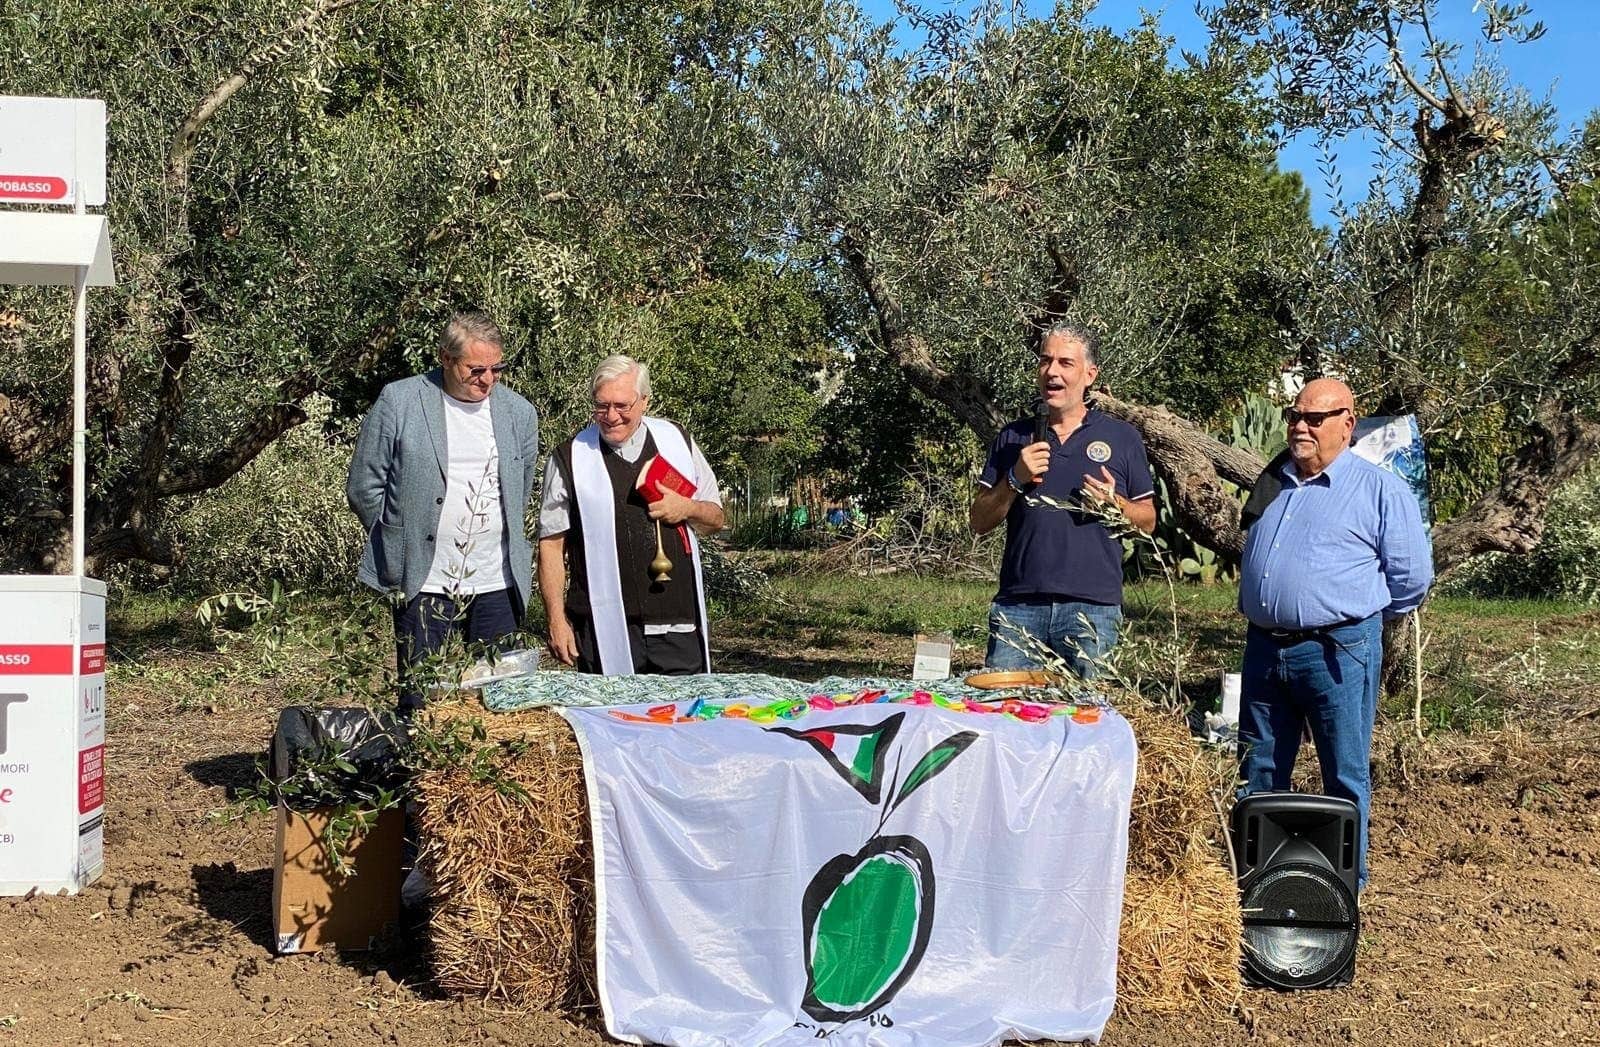 簡報品種新公園在莫利斯促進橄欖樹生物多樣性社會包容橄欖油時代